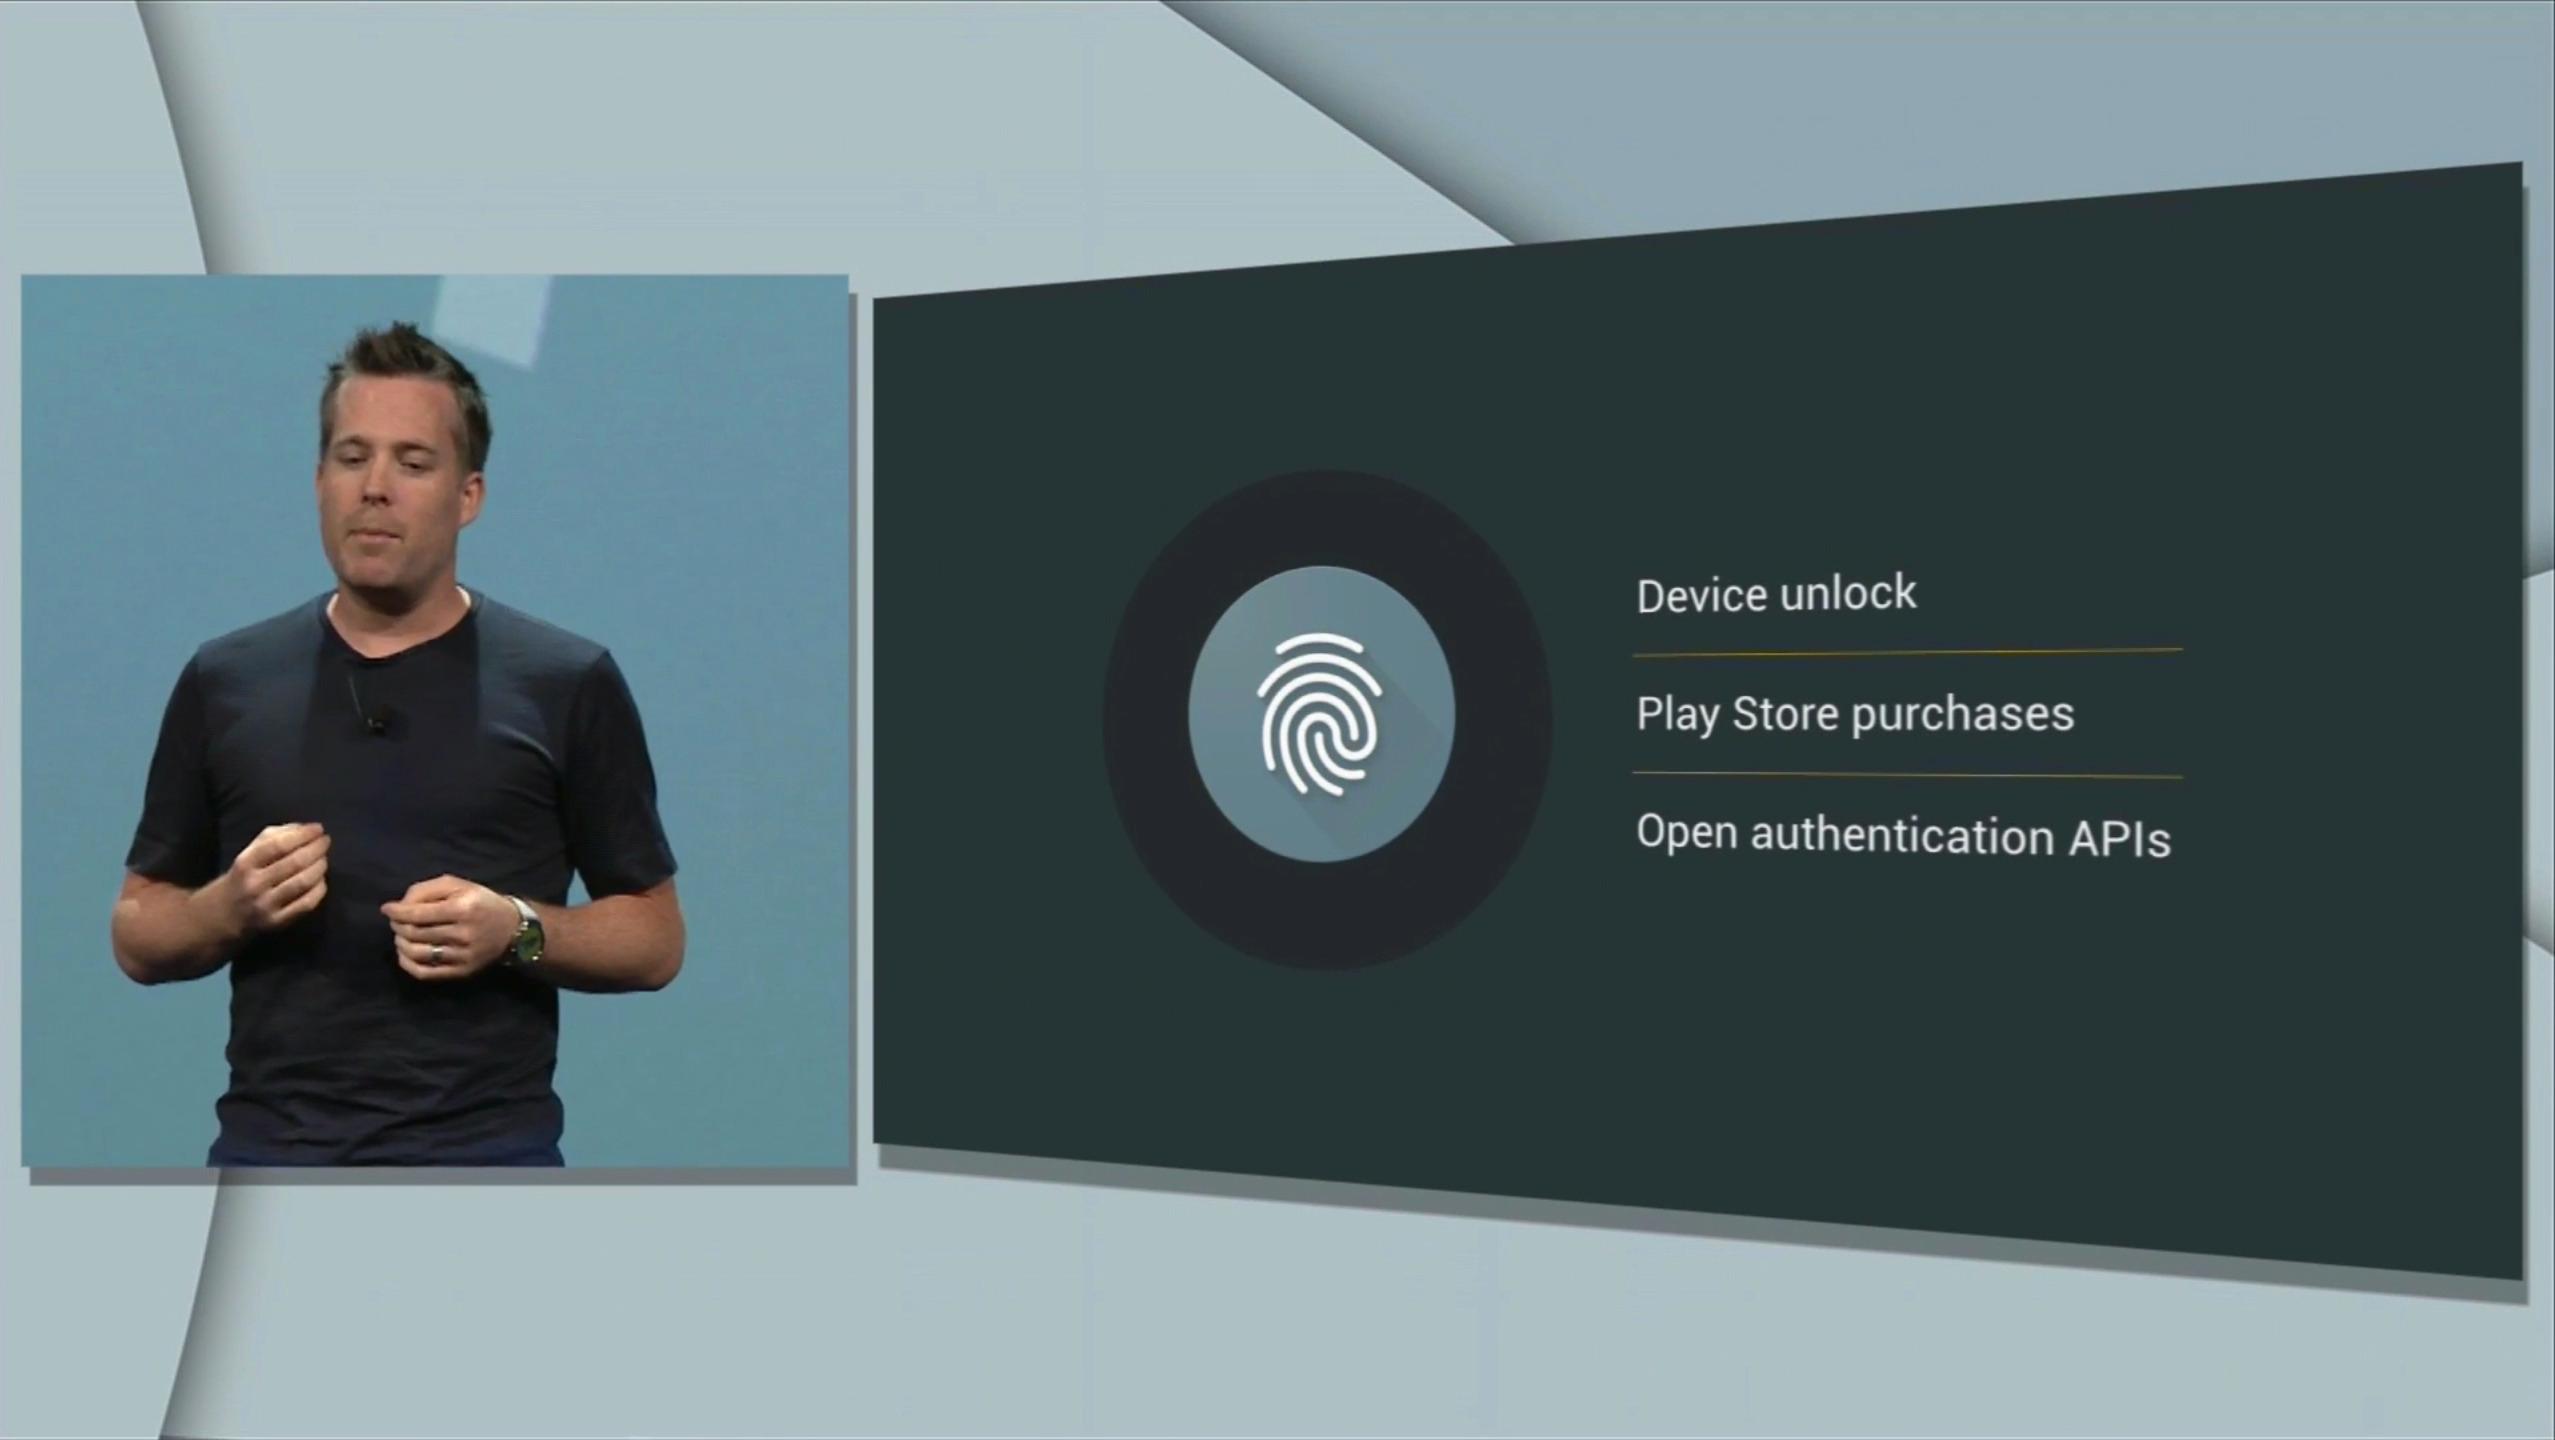 Fingeravtrykk blir standardisert som sikkerhet i Android M. Foto: Skjermdump, Youtube/Google